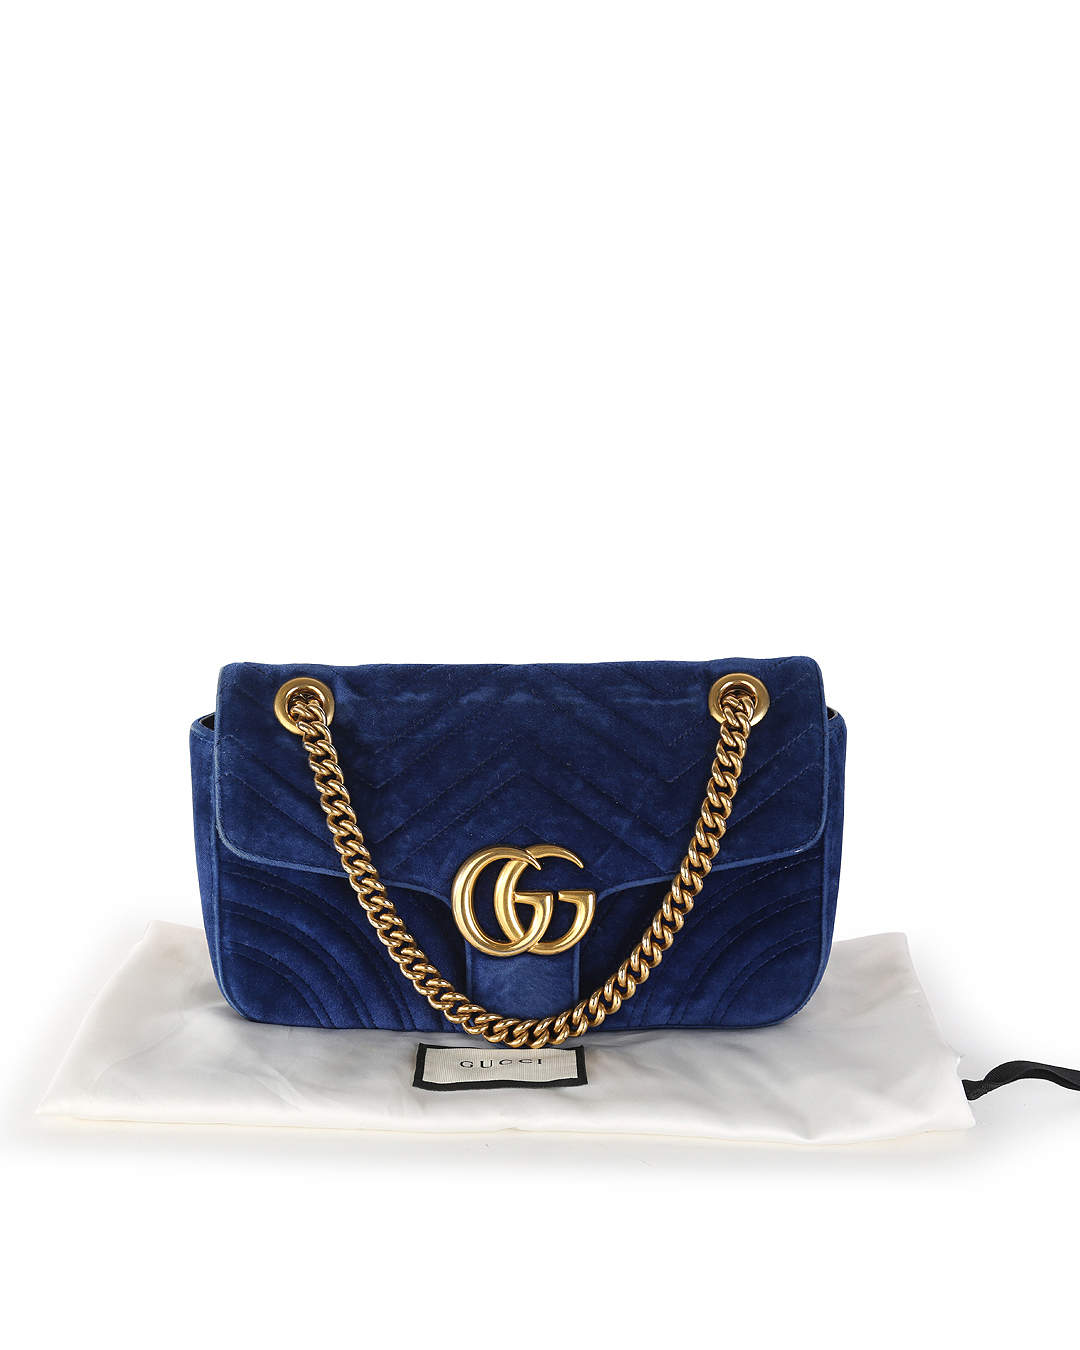 Sac à main Gucci GG Marmont velvet bleu - Delux Sales